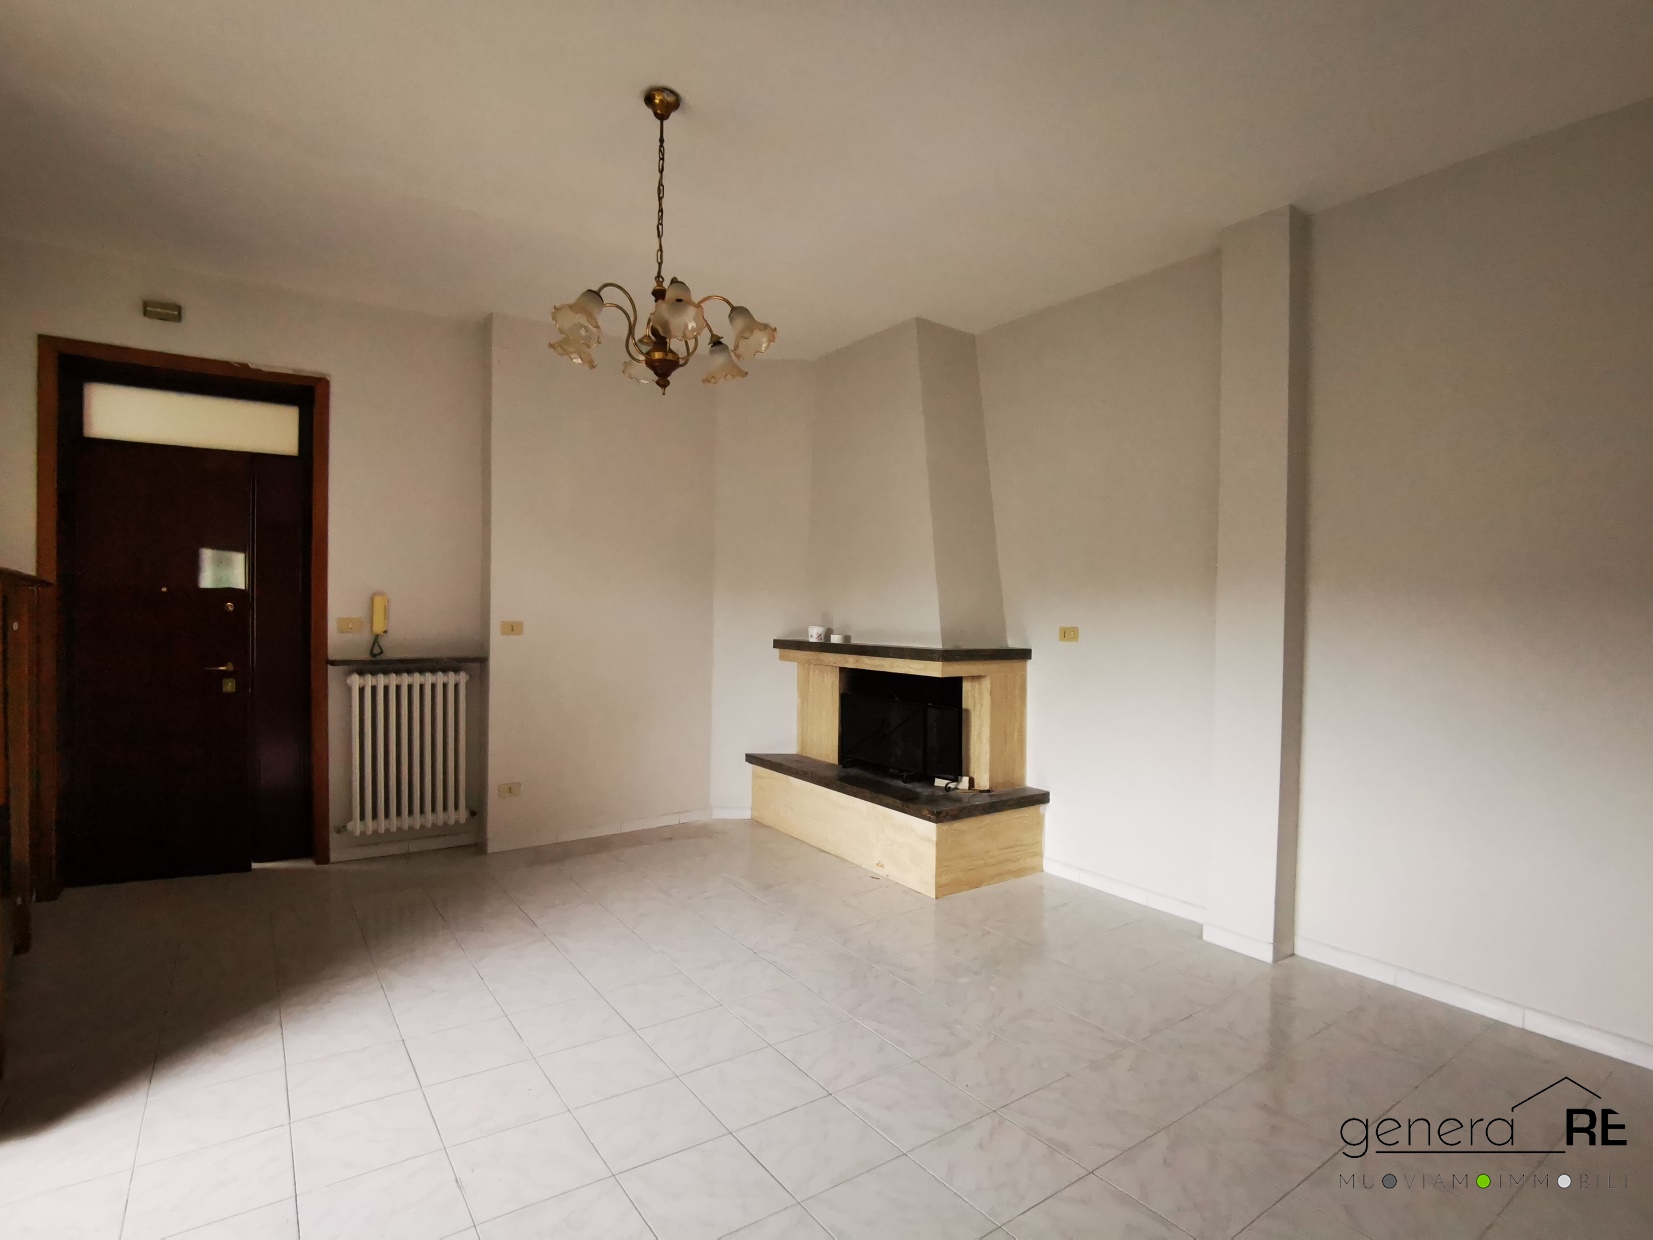 Appartamento in vendita a Pescara, 3 locali, prezzo € 110.000 | PortaleAgenzieImmobiliari.it